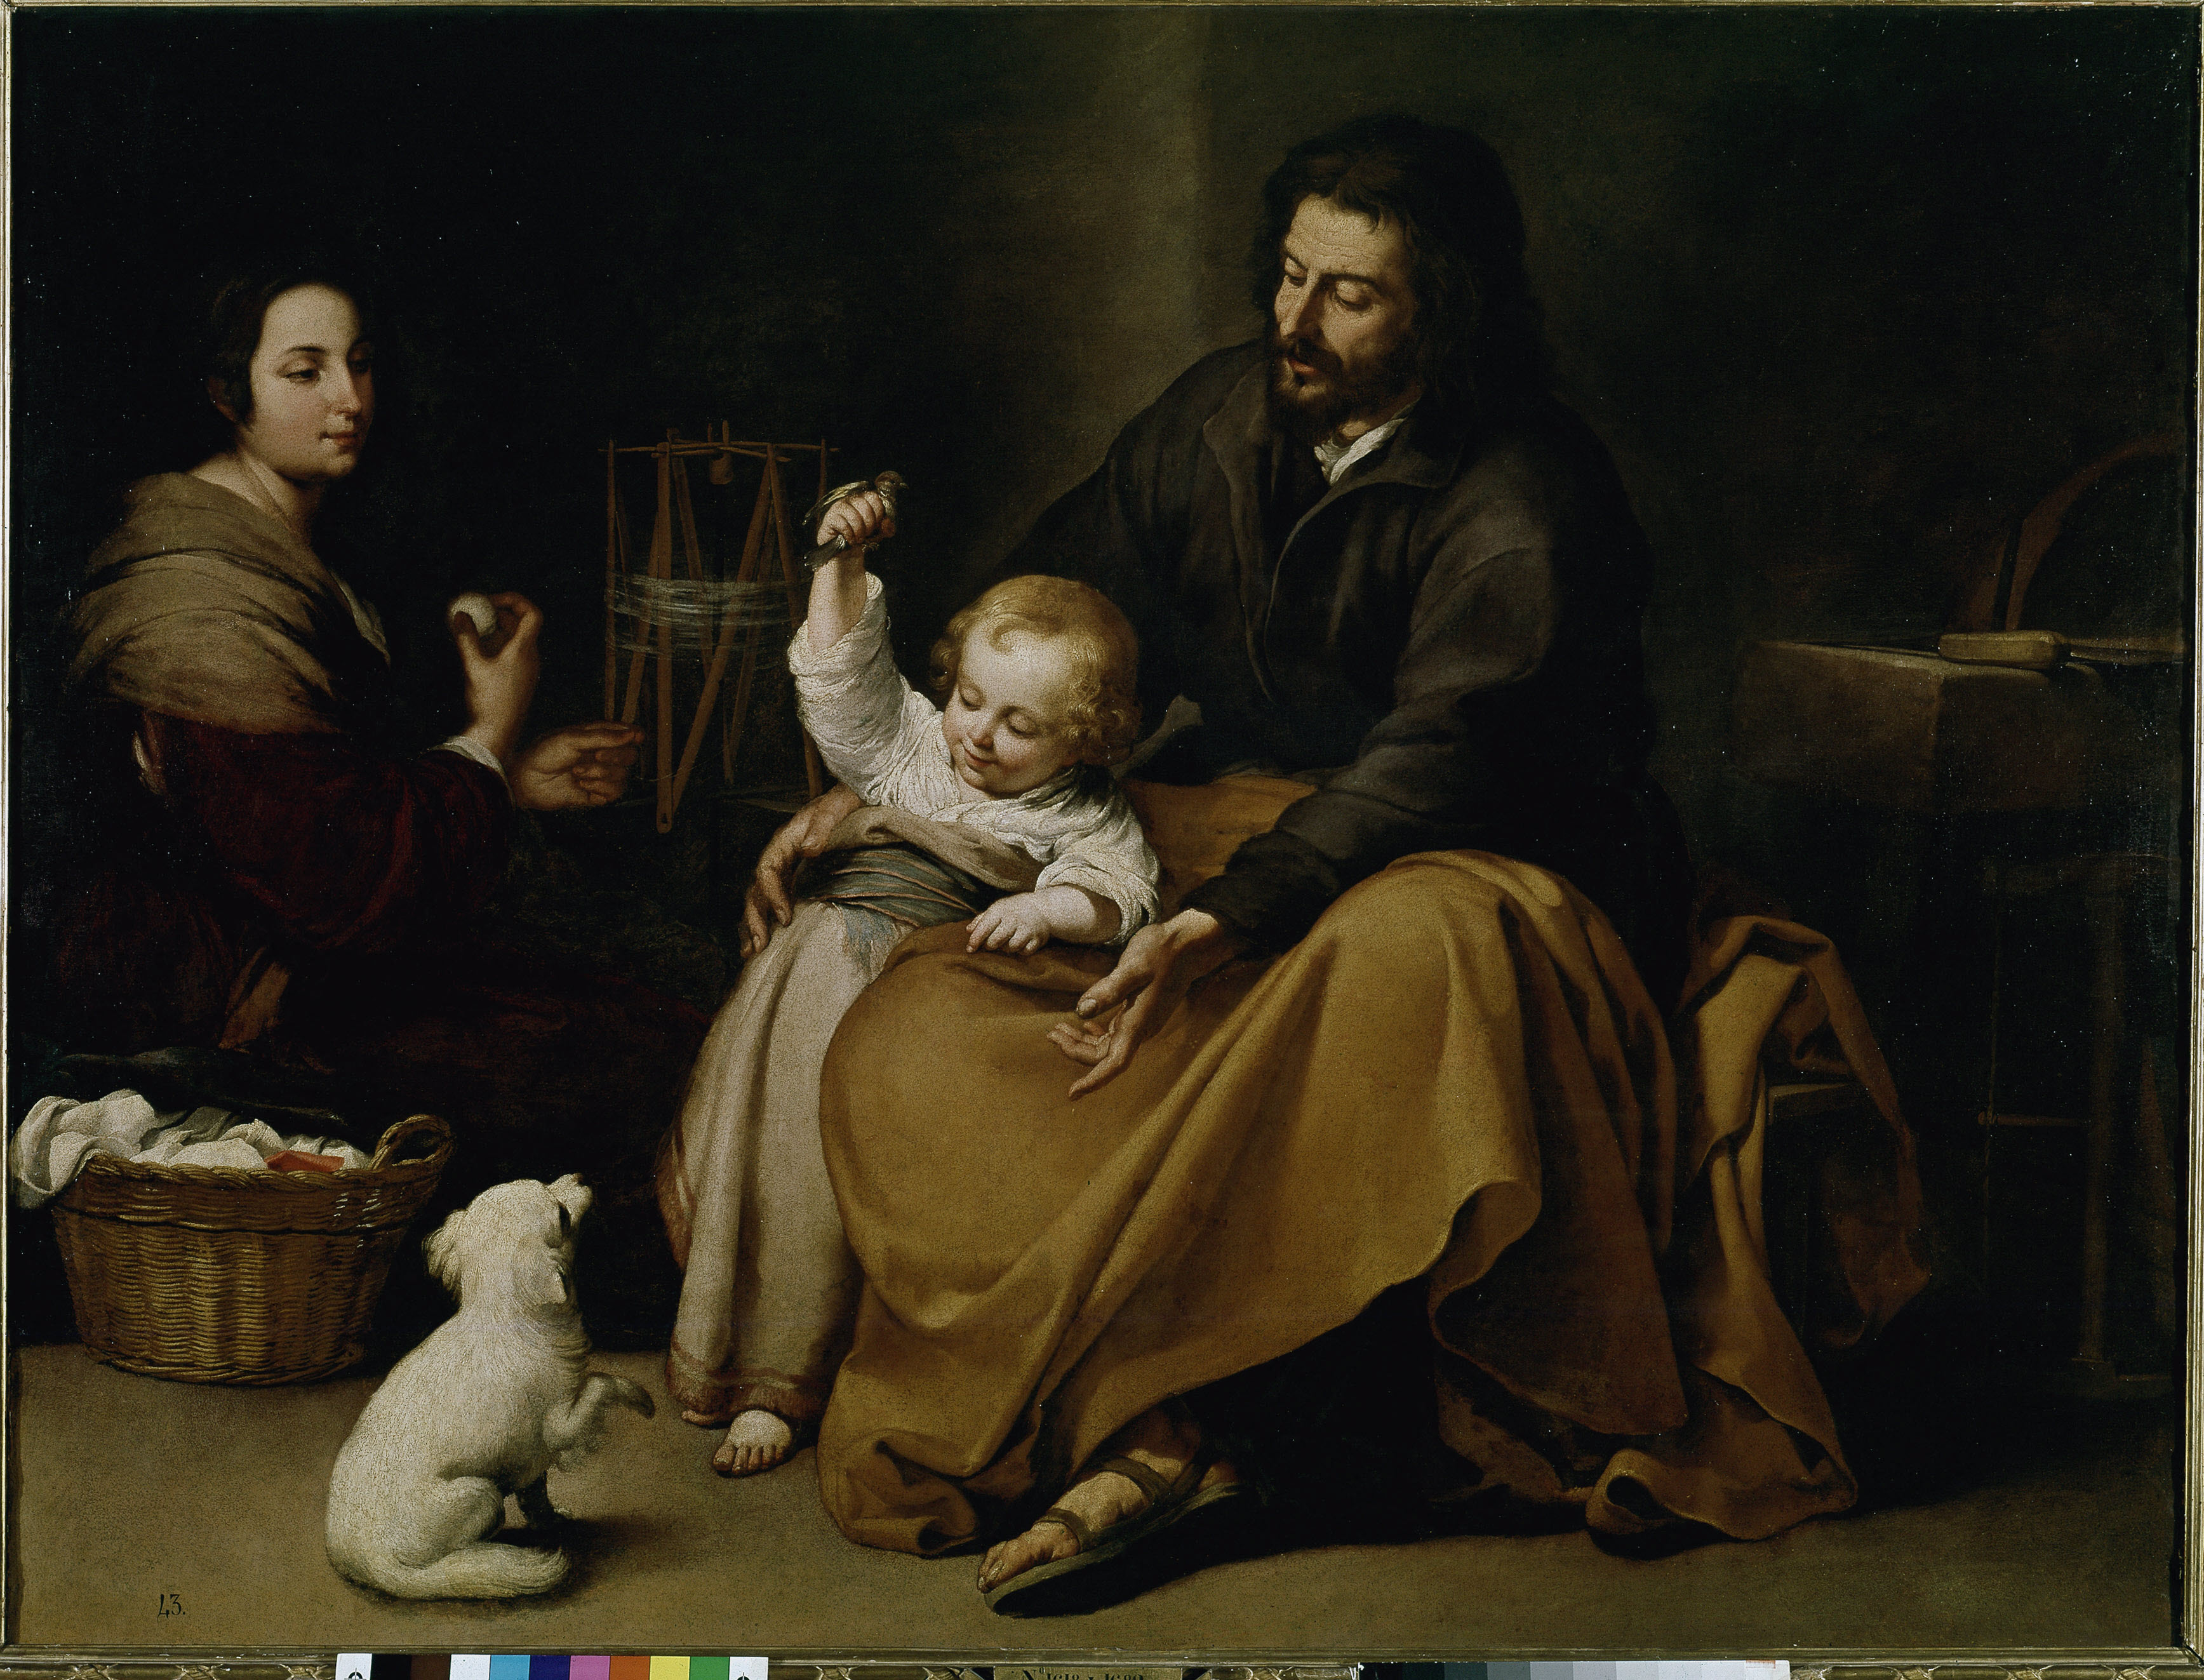 A szent család Esteban Murillo képén, 1650 körül